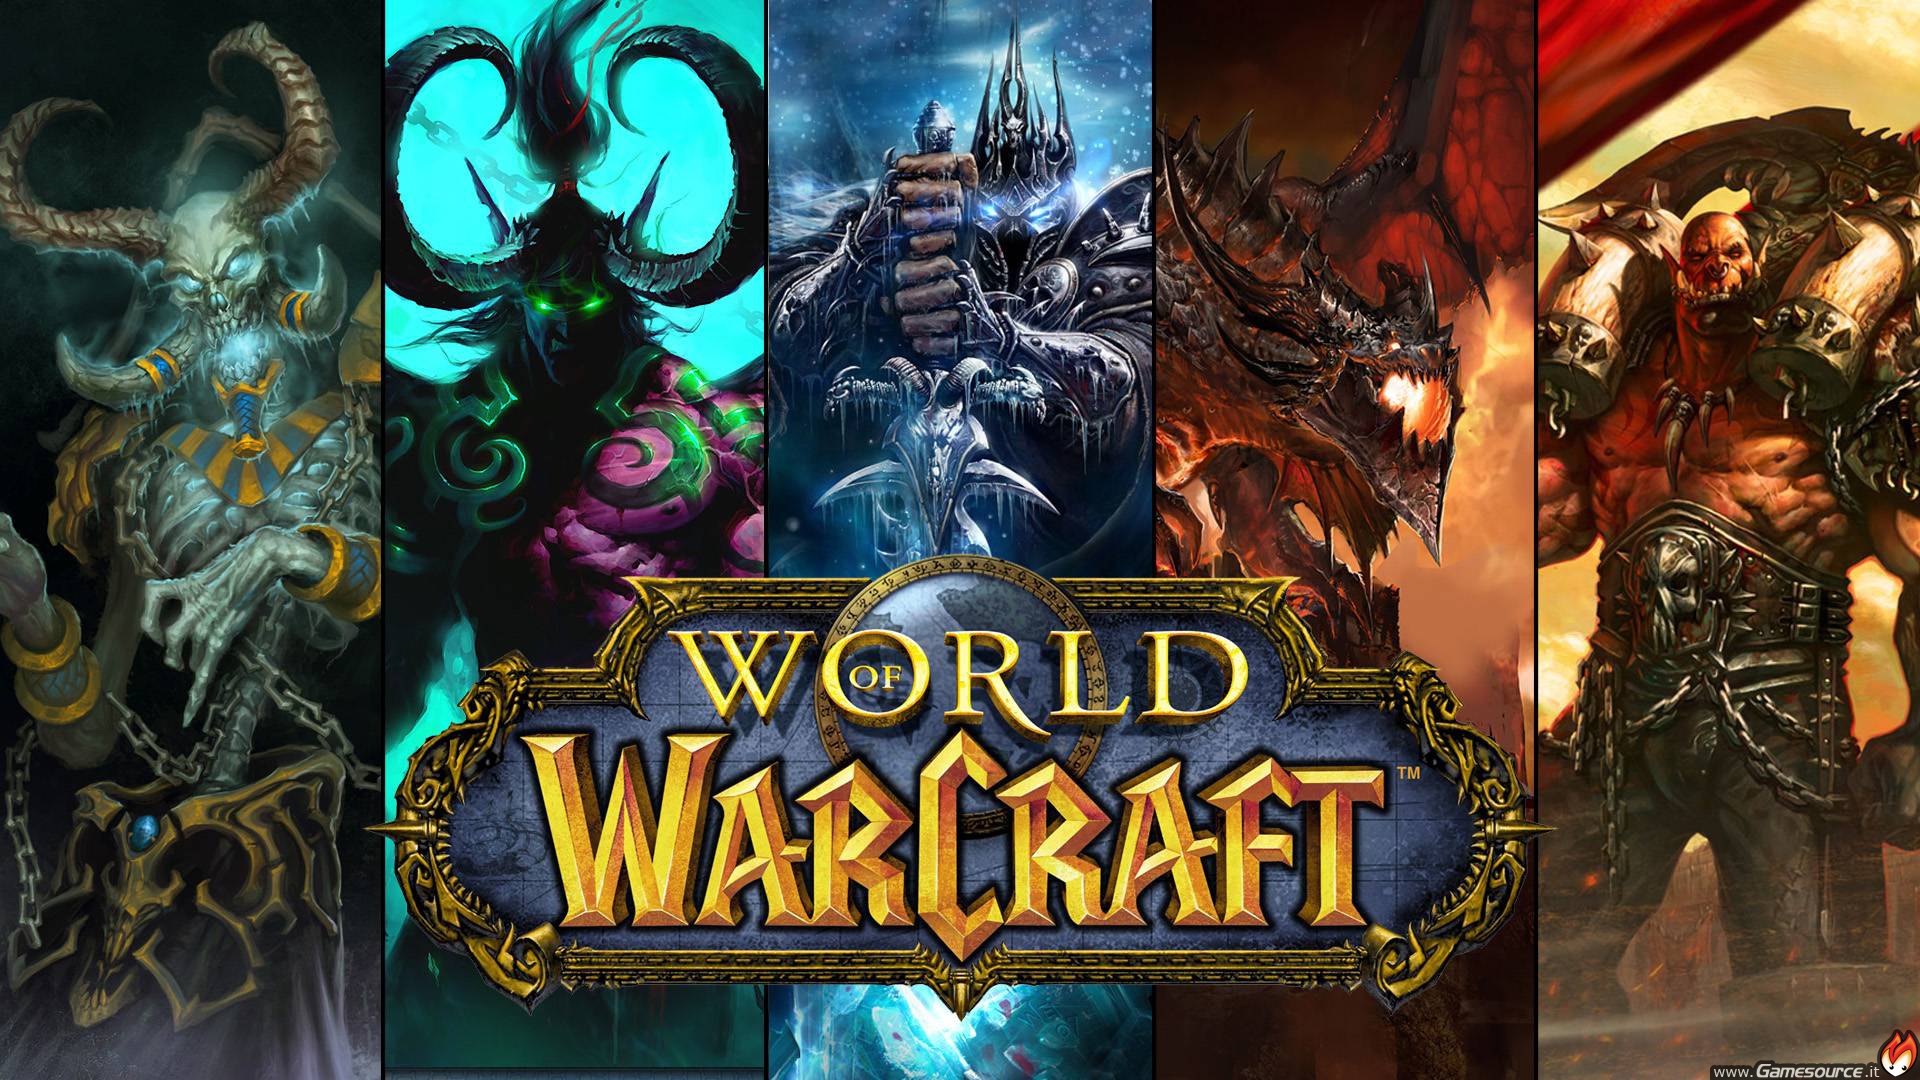 World of Warcraft non richiede di acquistare il gioco, solo la sottoscrizione